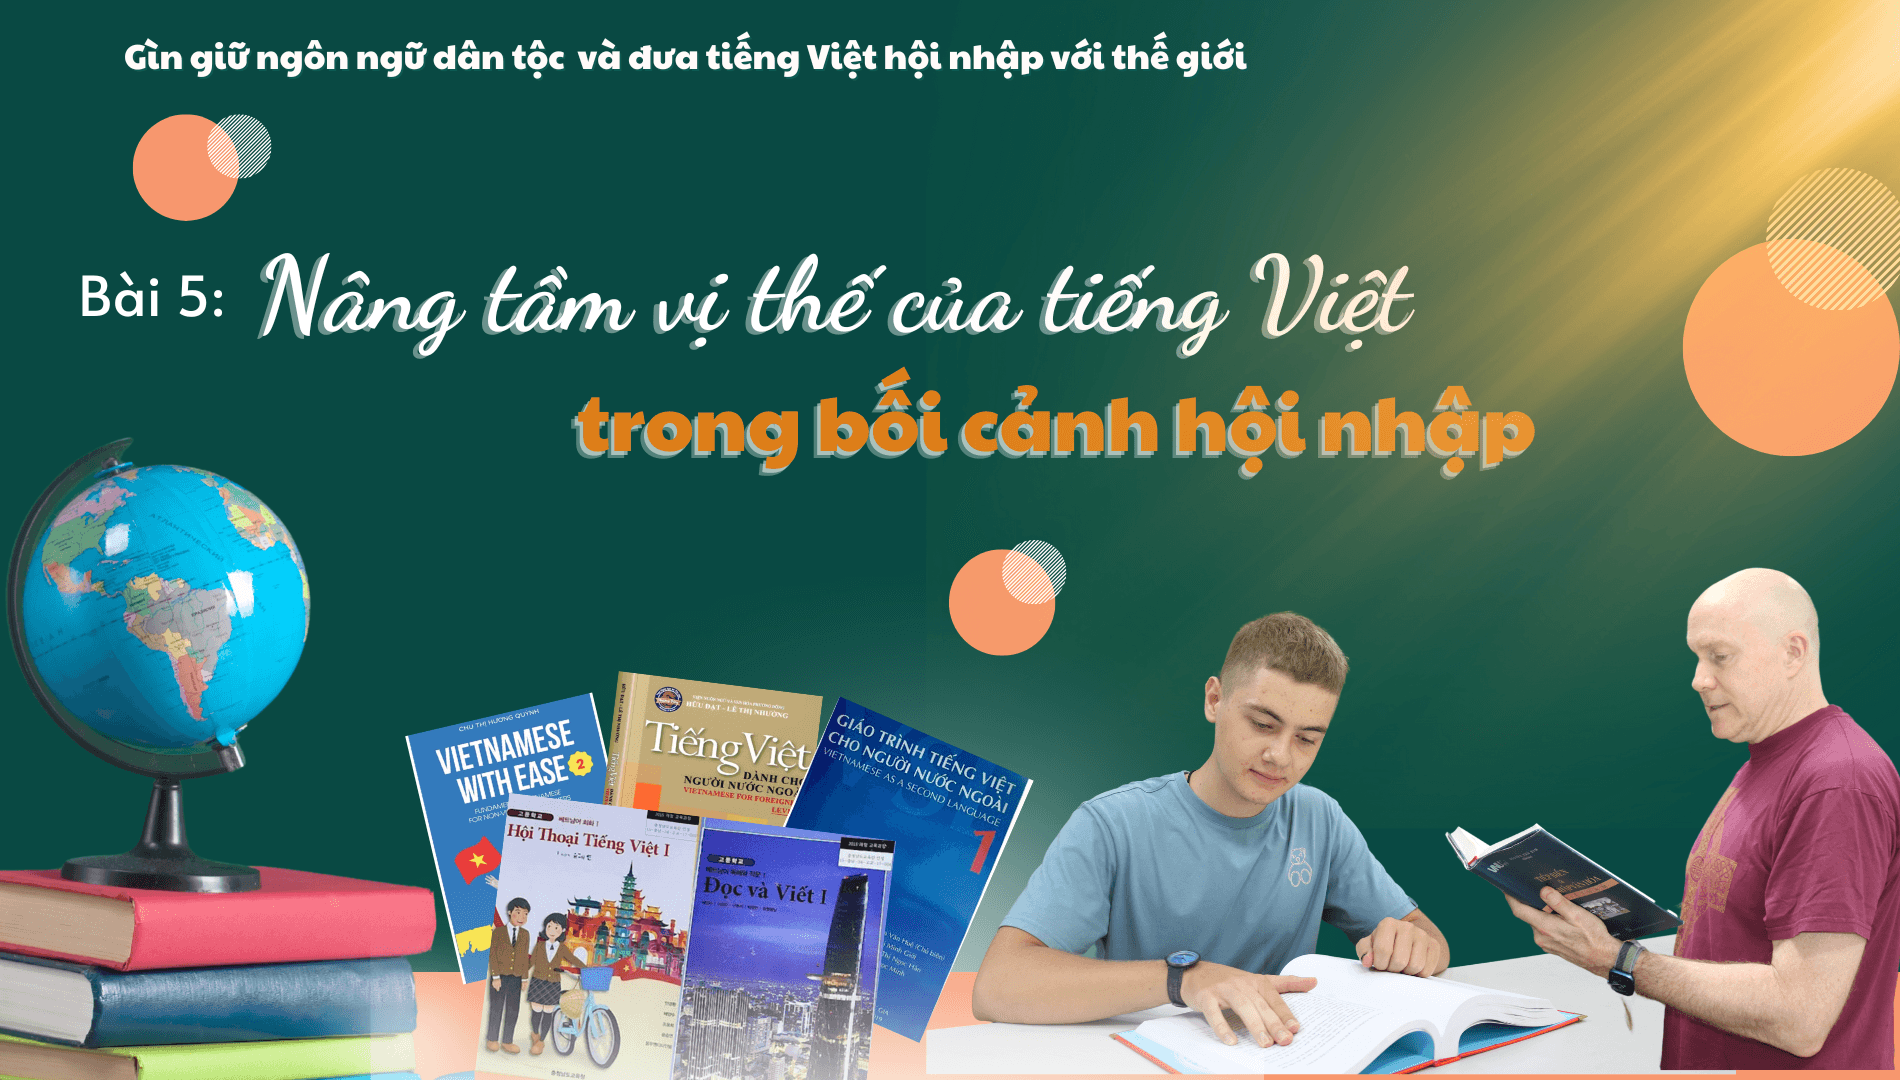 Bài 5: Nâng tầm vị thế của tiếng Việt trong bối cảnh hội nhập